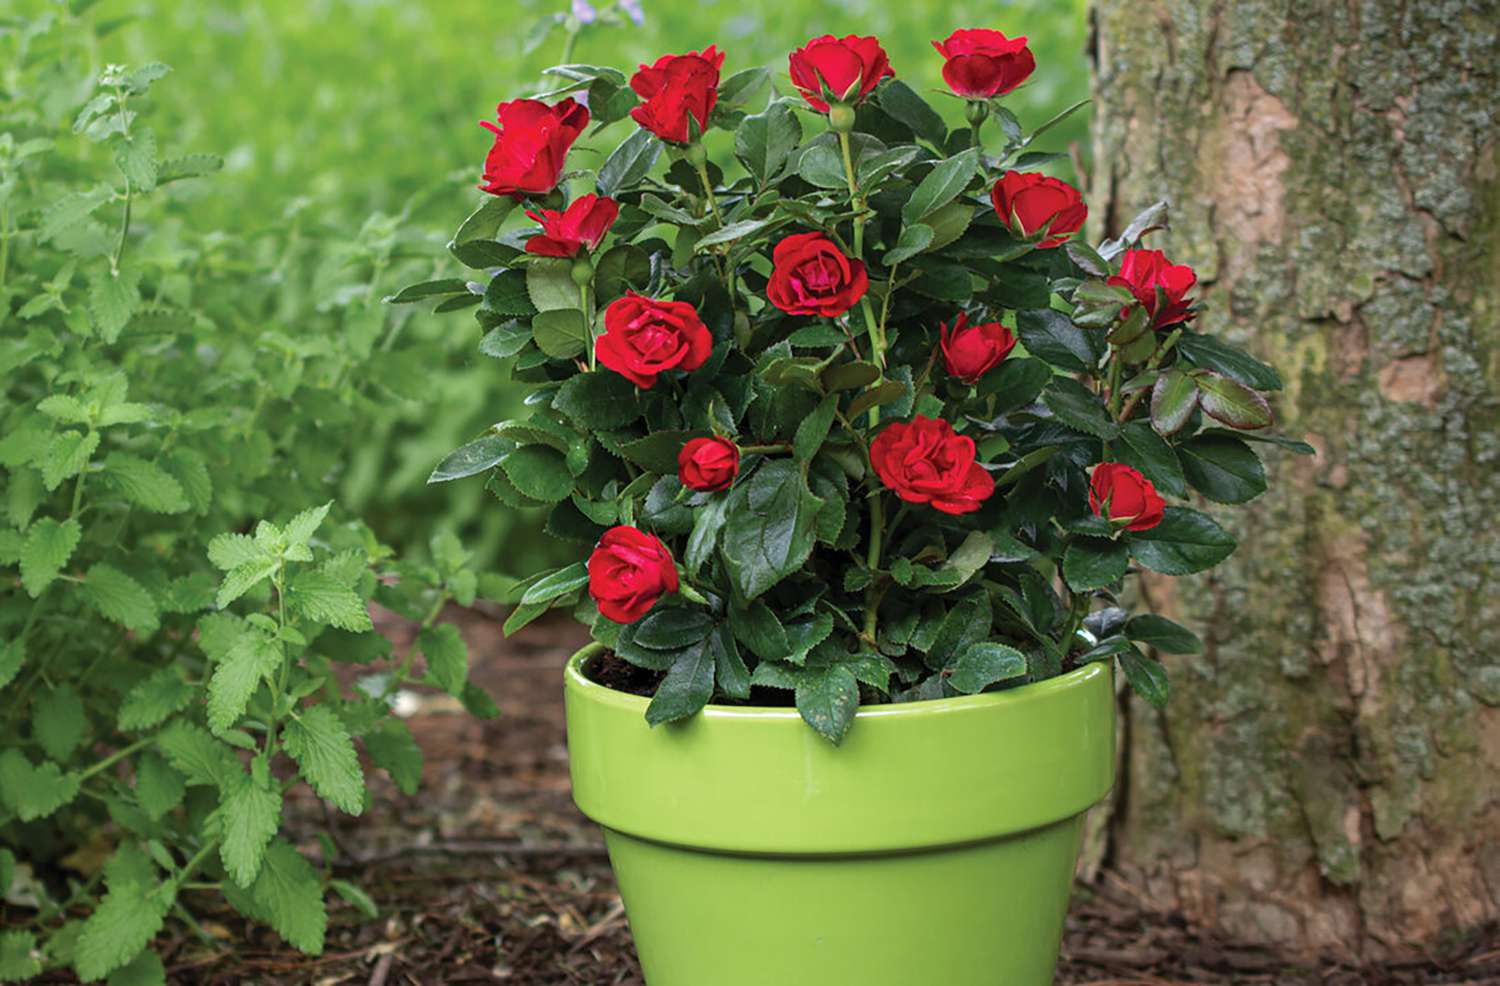 Rose bush in pot